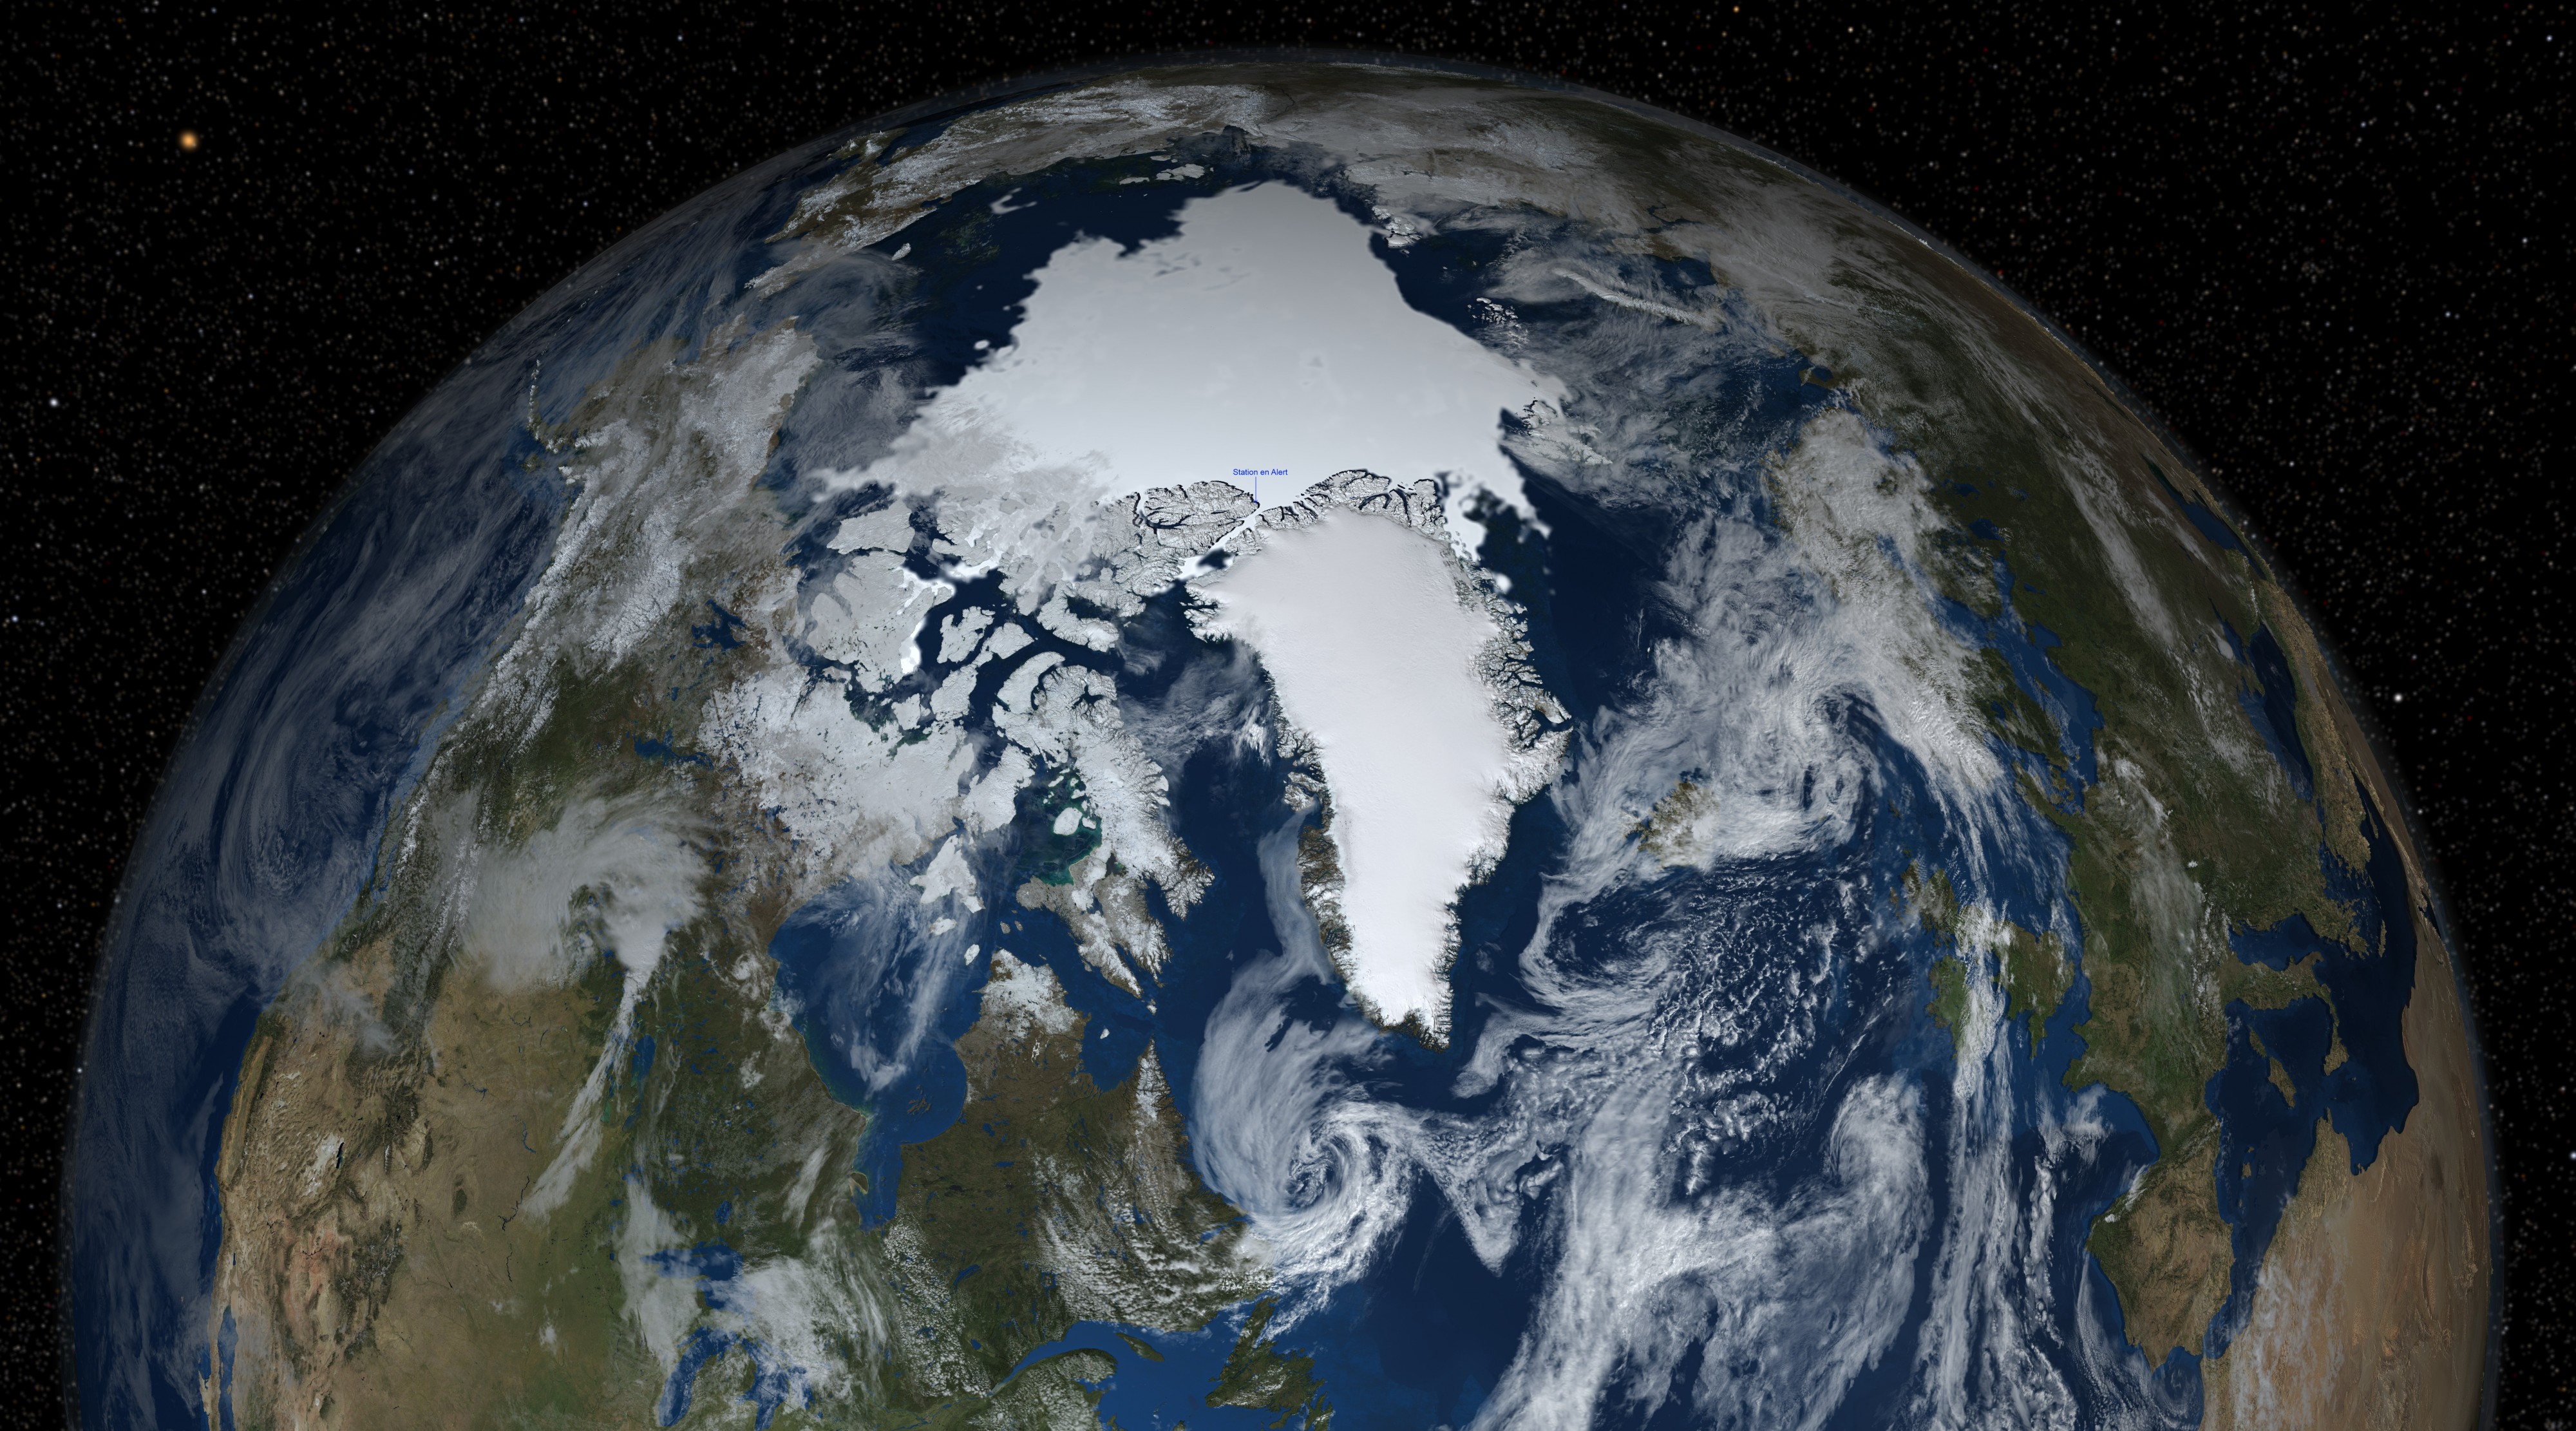 L'hémisphère nord de la Terre avec la banquise, nuage, étoile et localisation de la station météo en Alert